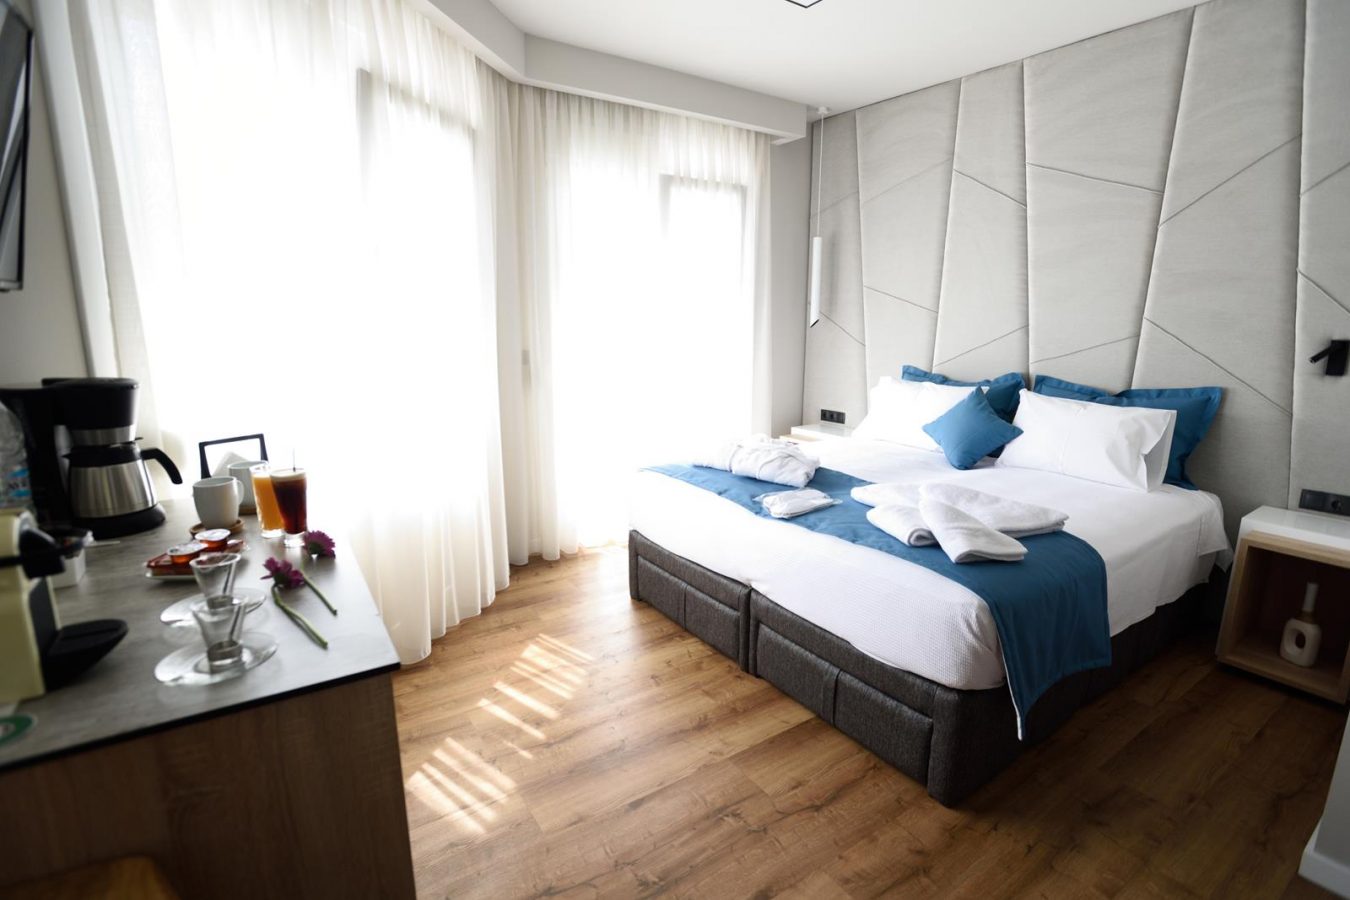 δωματια θεσσαλονικη κεντρο - magnifique luxury suites